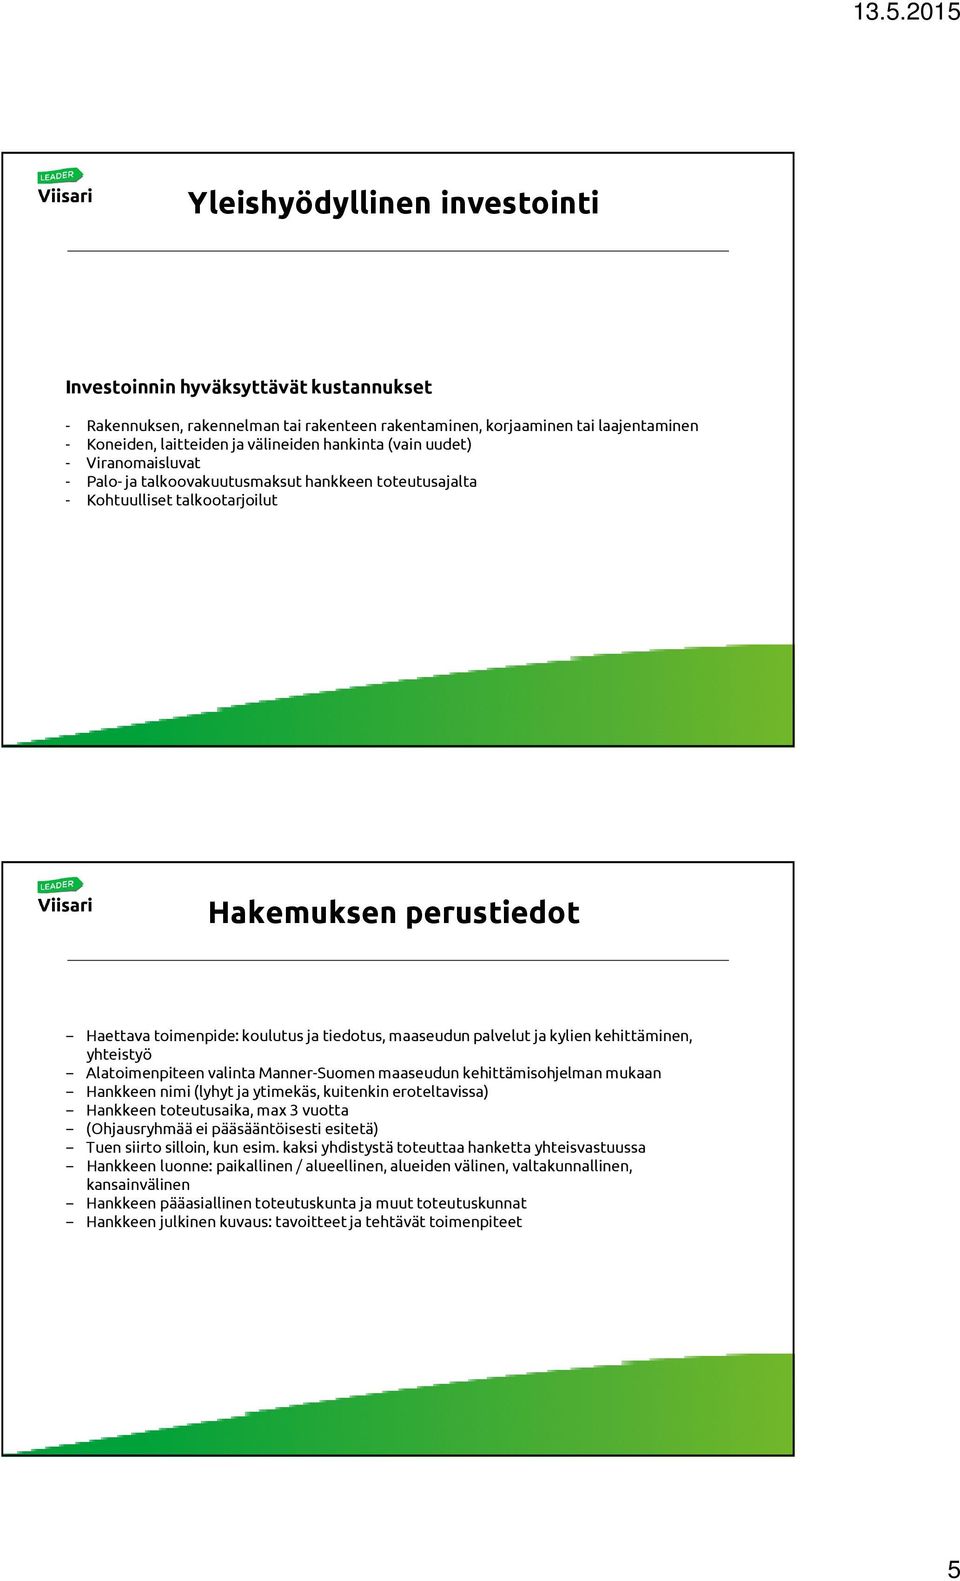 palvelut ja kylien kehittäminen, yhteistyö Alatoimenpiteen valinta Manner-Suomen maaseudun kehittämisohjelman mukaan Hankkeen nimi (lyhyt ja ytimekäs, kuitenkin eroteltavissa) Hankkeen toteutusaika,